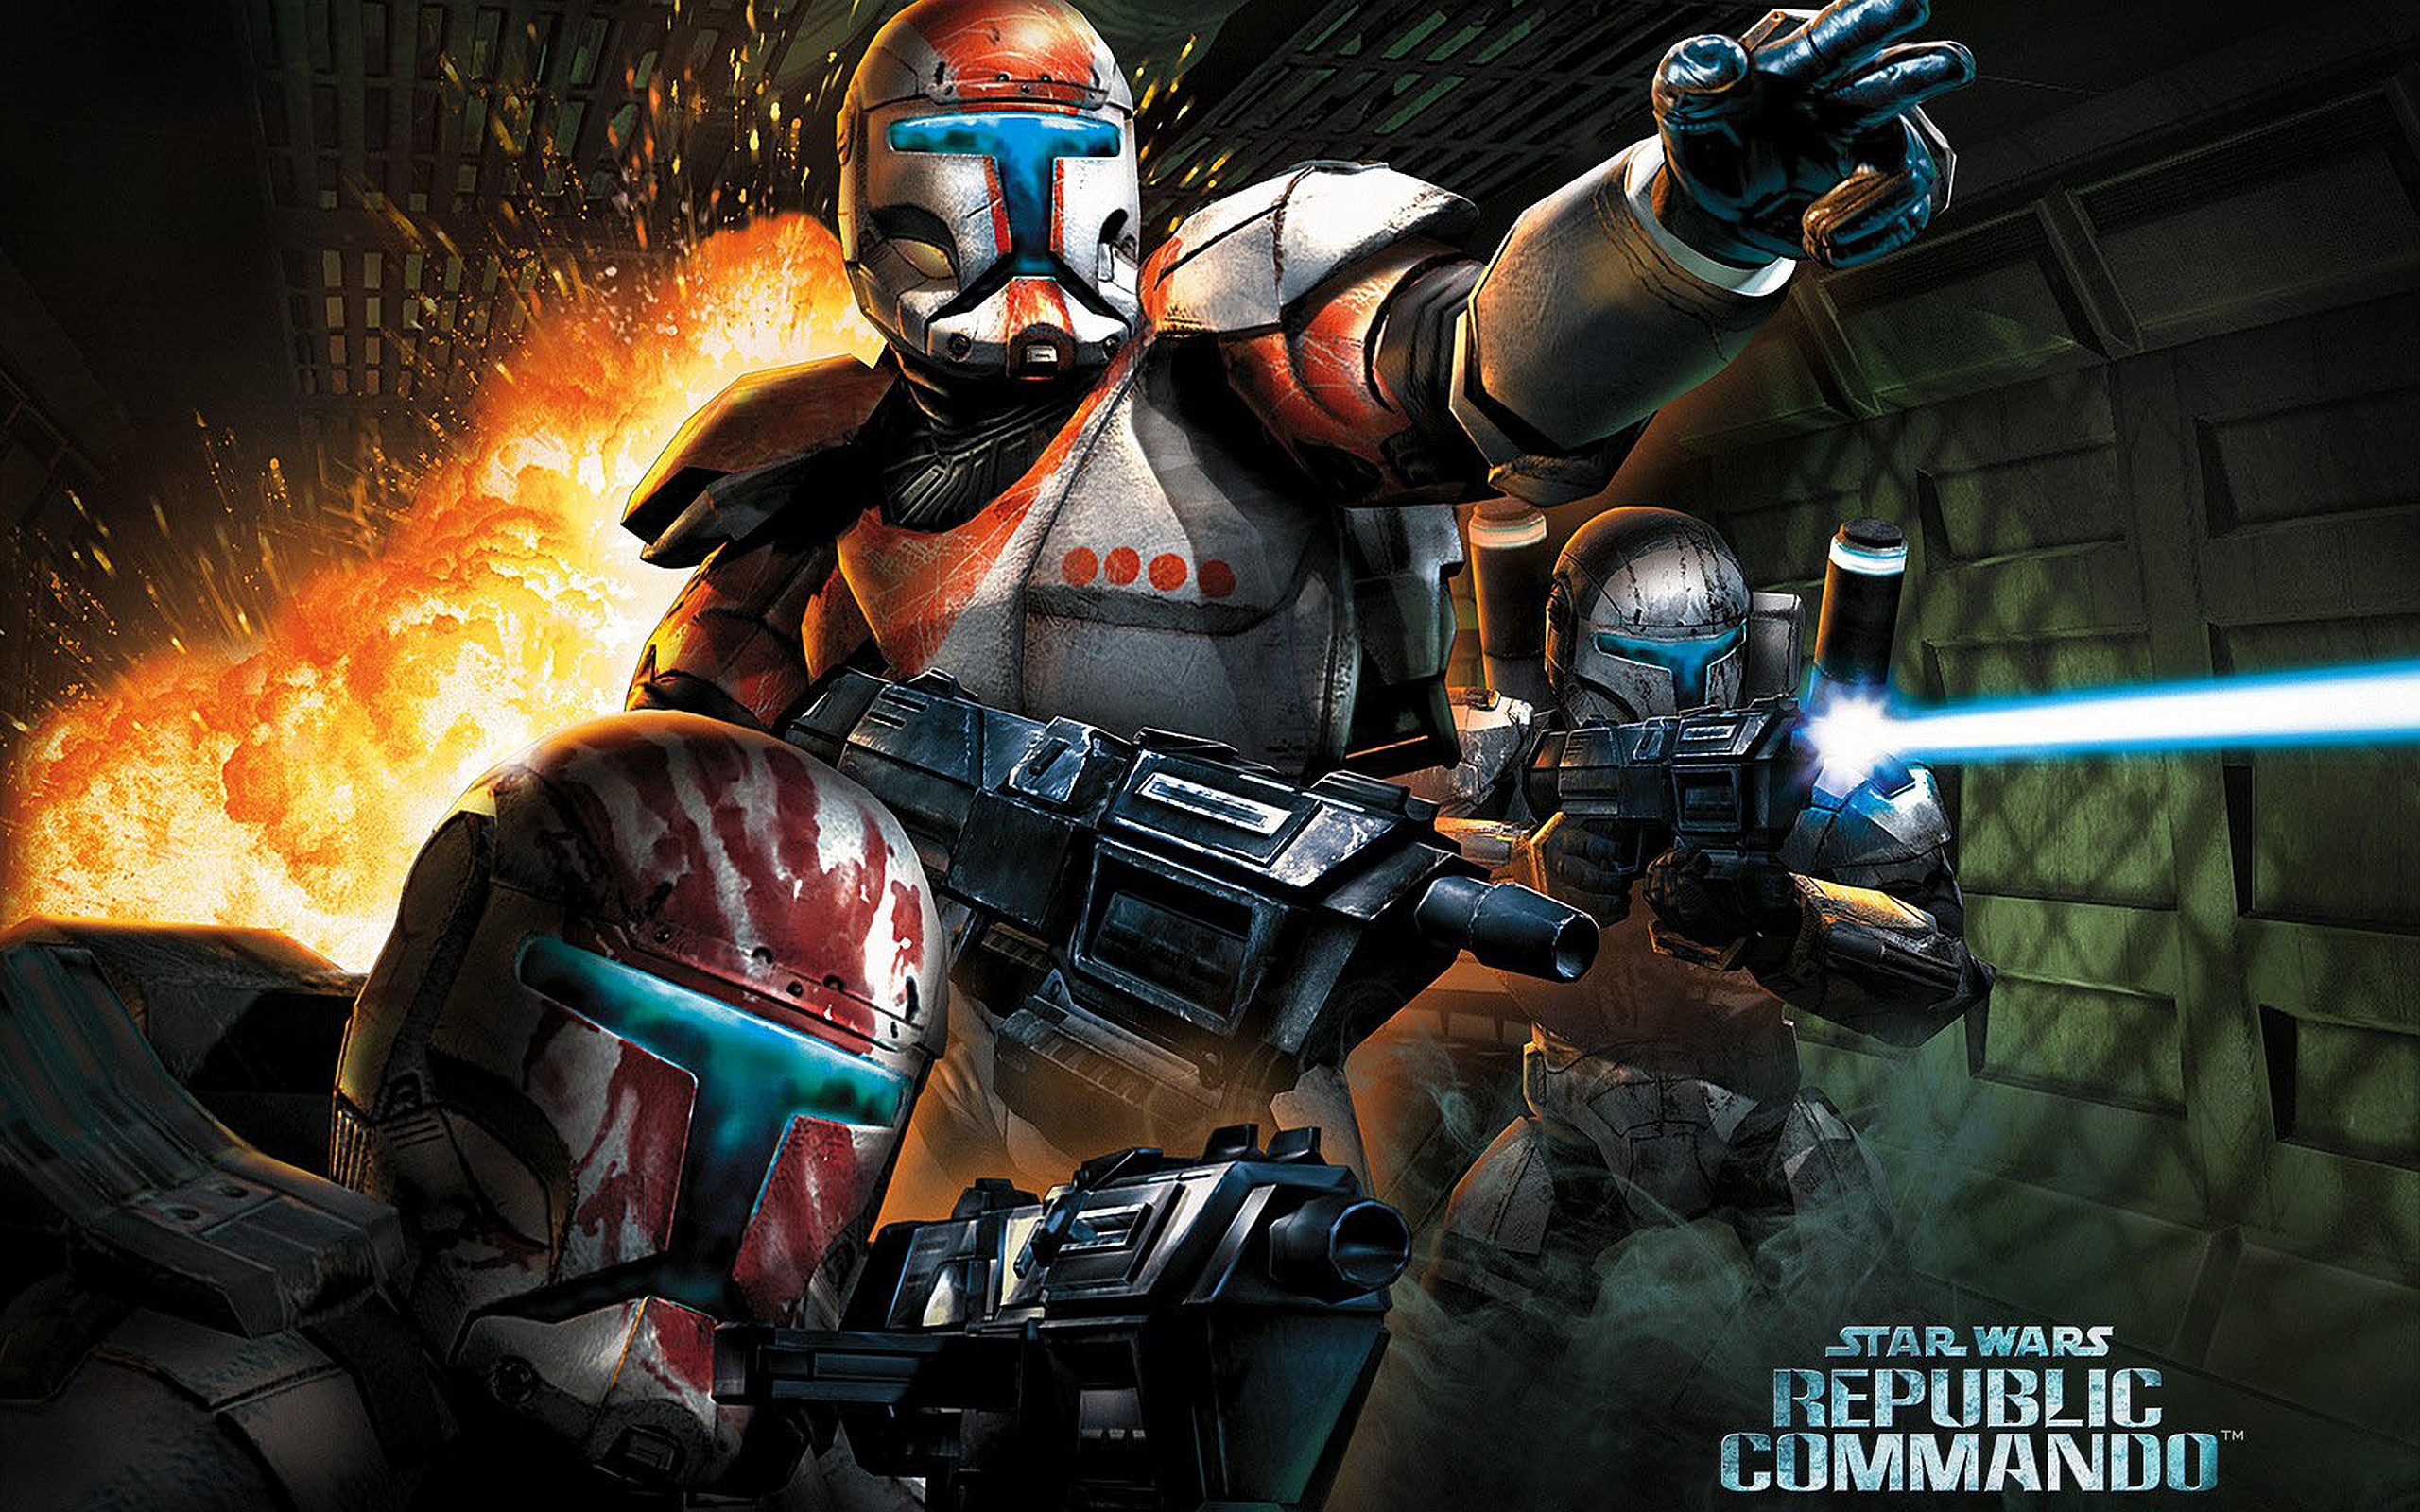 Клоны командос. Звёздные войны Republic Commando игра. Star Wars республиканские коммандос. Стар ВАРС республик командо 2. Star Wars Republic Commando Clone.